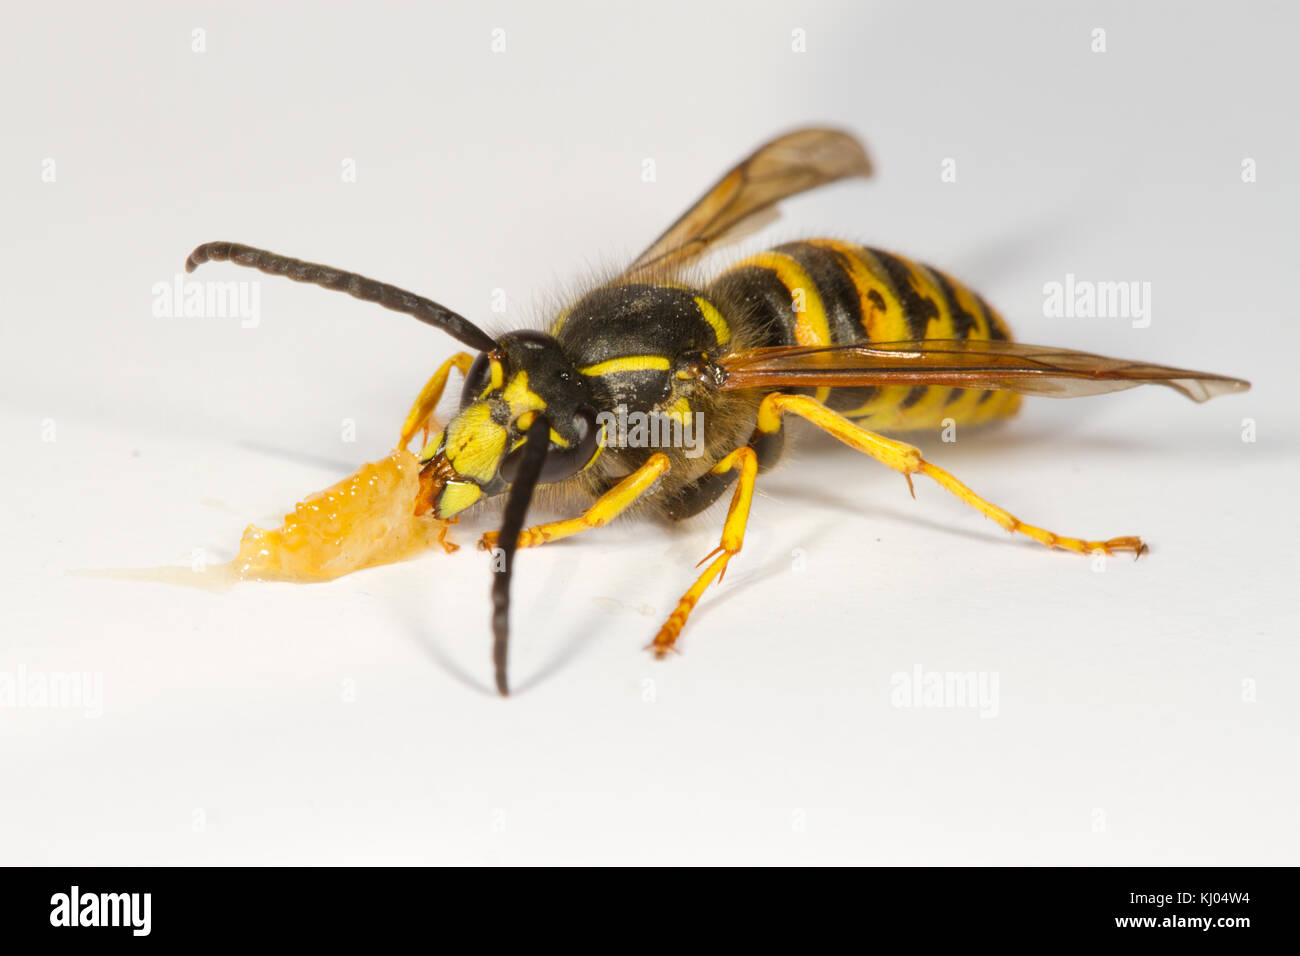 Guêpe Dolichovespula saxonica (Saxon) mâle adulte se nourrit de miel sur un fond blanc. Powys, Pays de Galles. En août. Banque D'Images